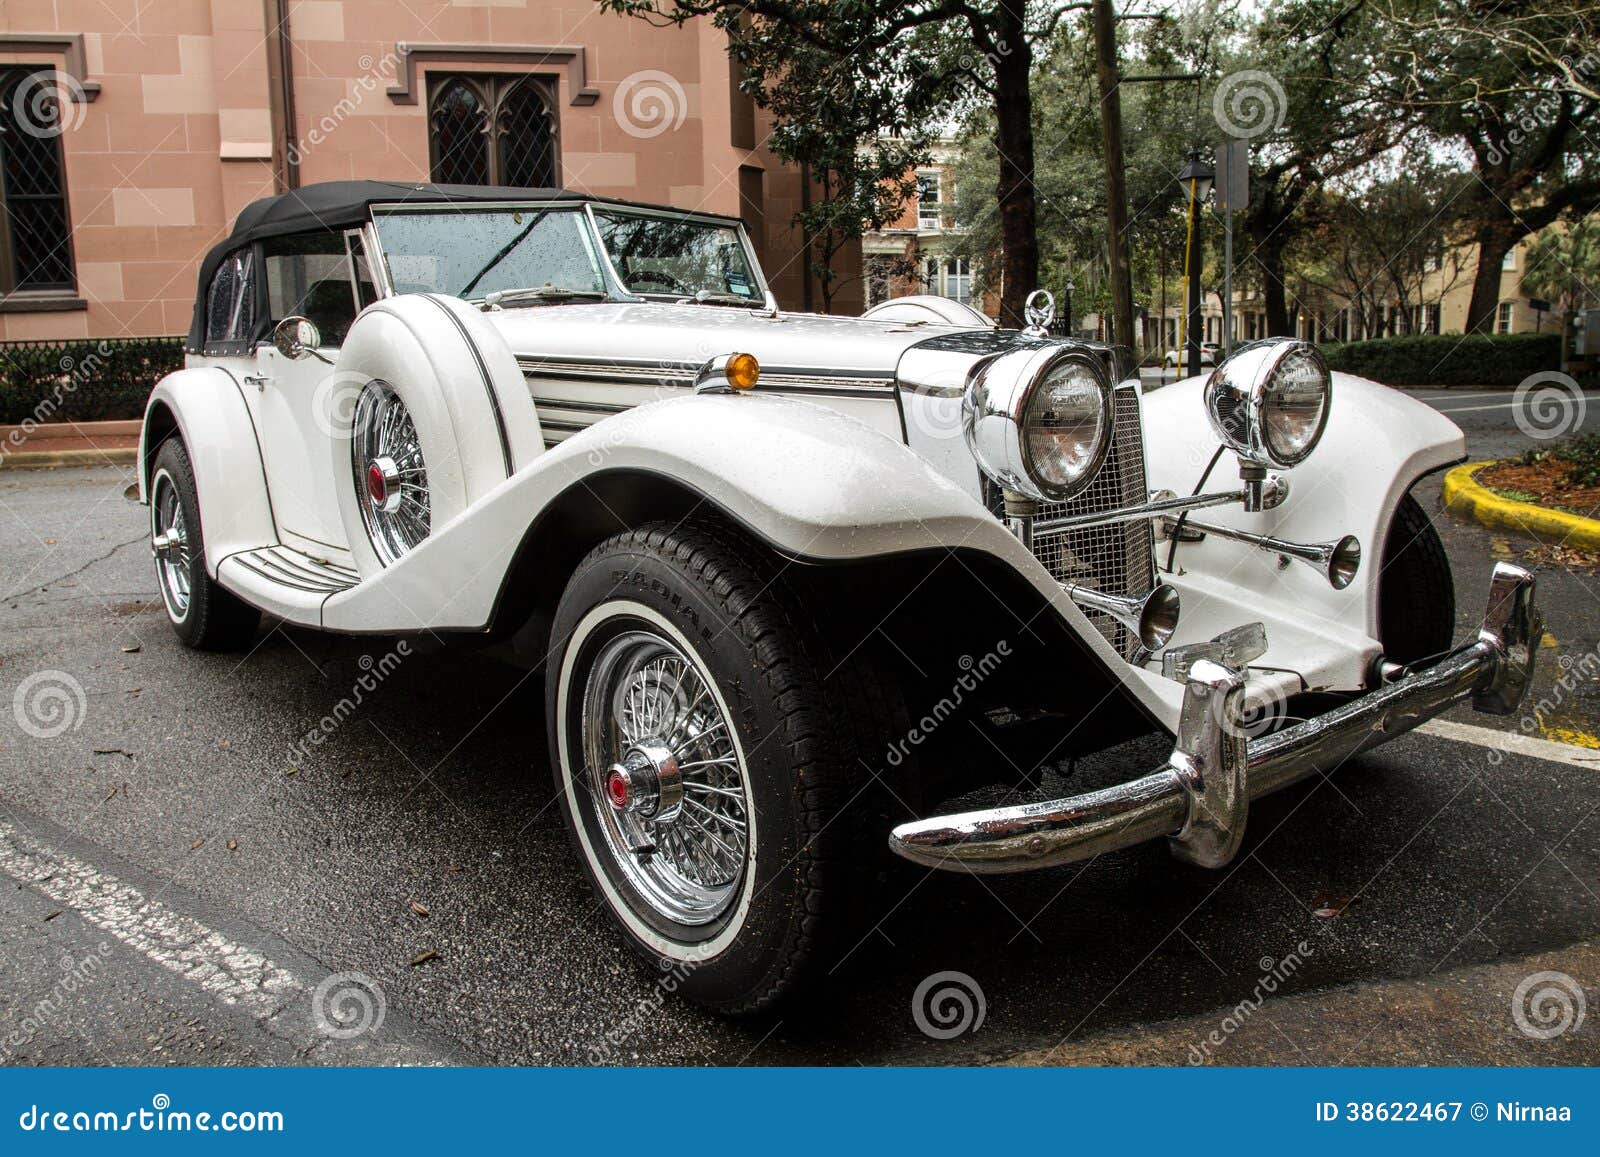 Antique classic luxury sports car.